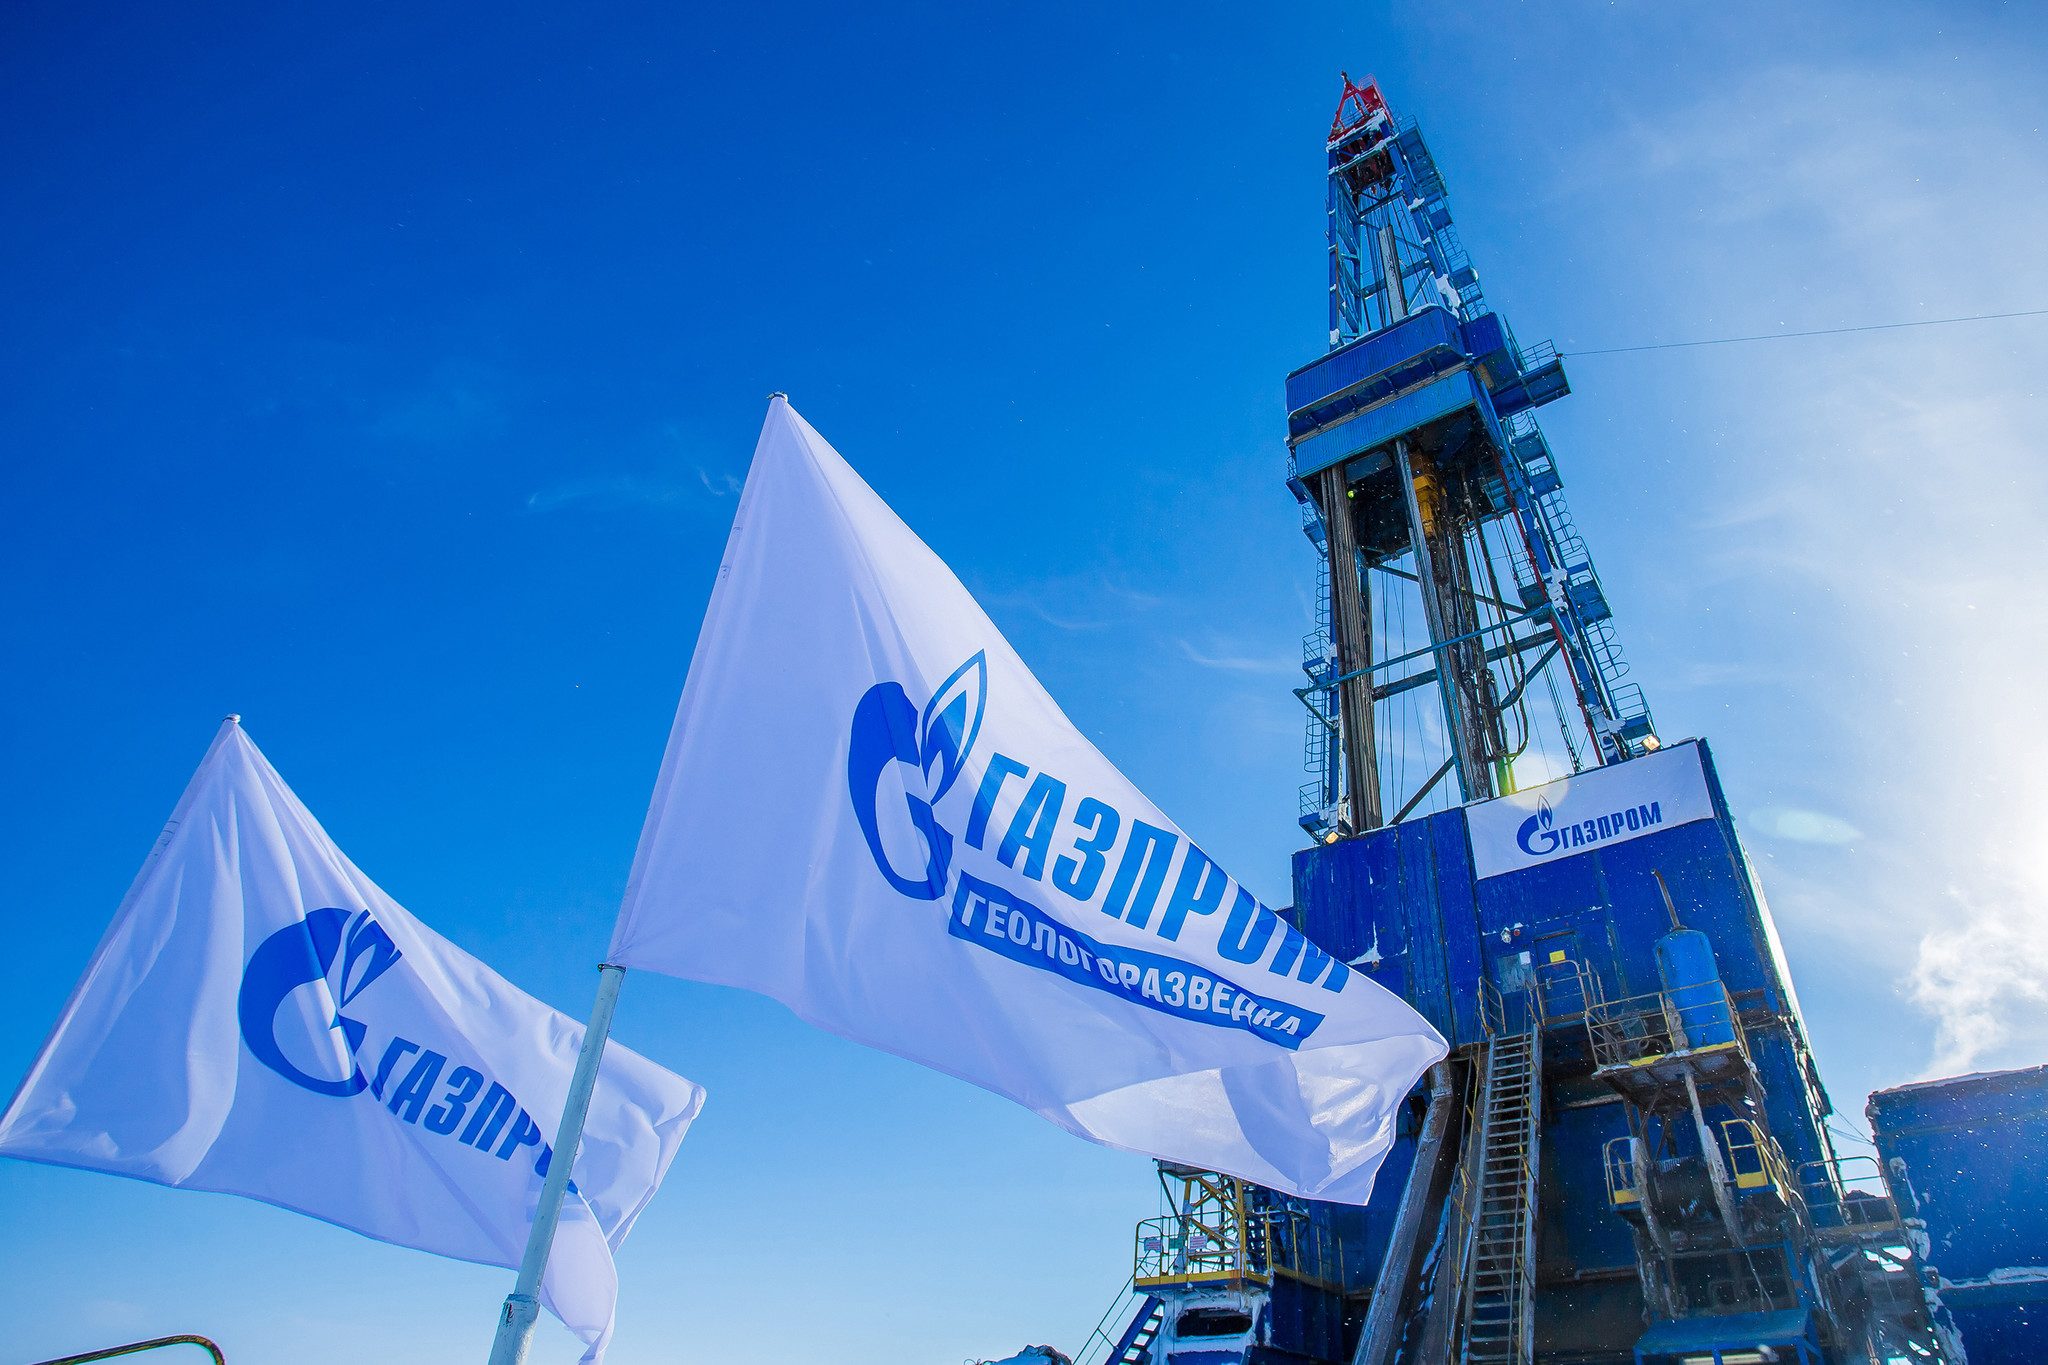 Прибуток російського “Газпрому” через війну в Україні впав більш як втричі 